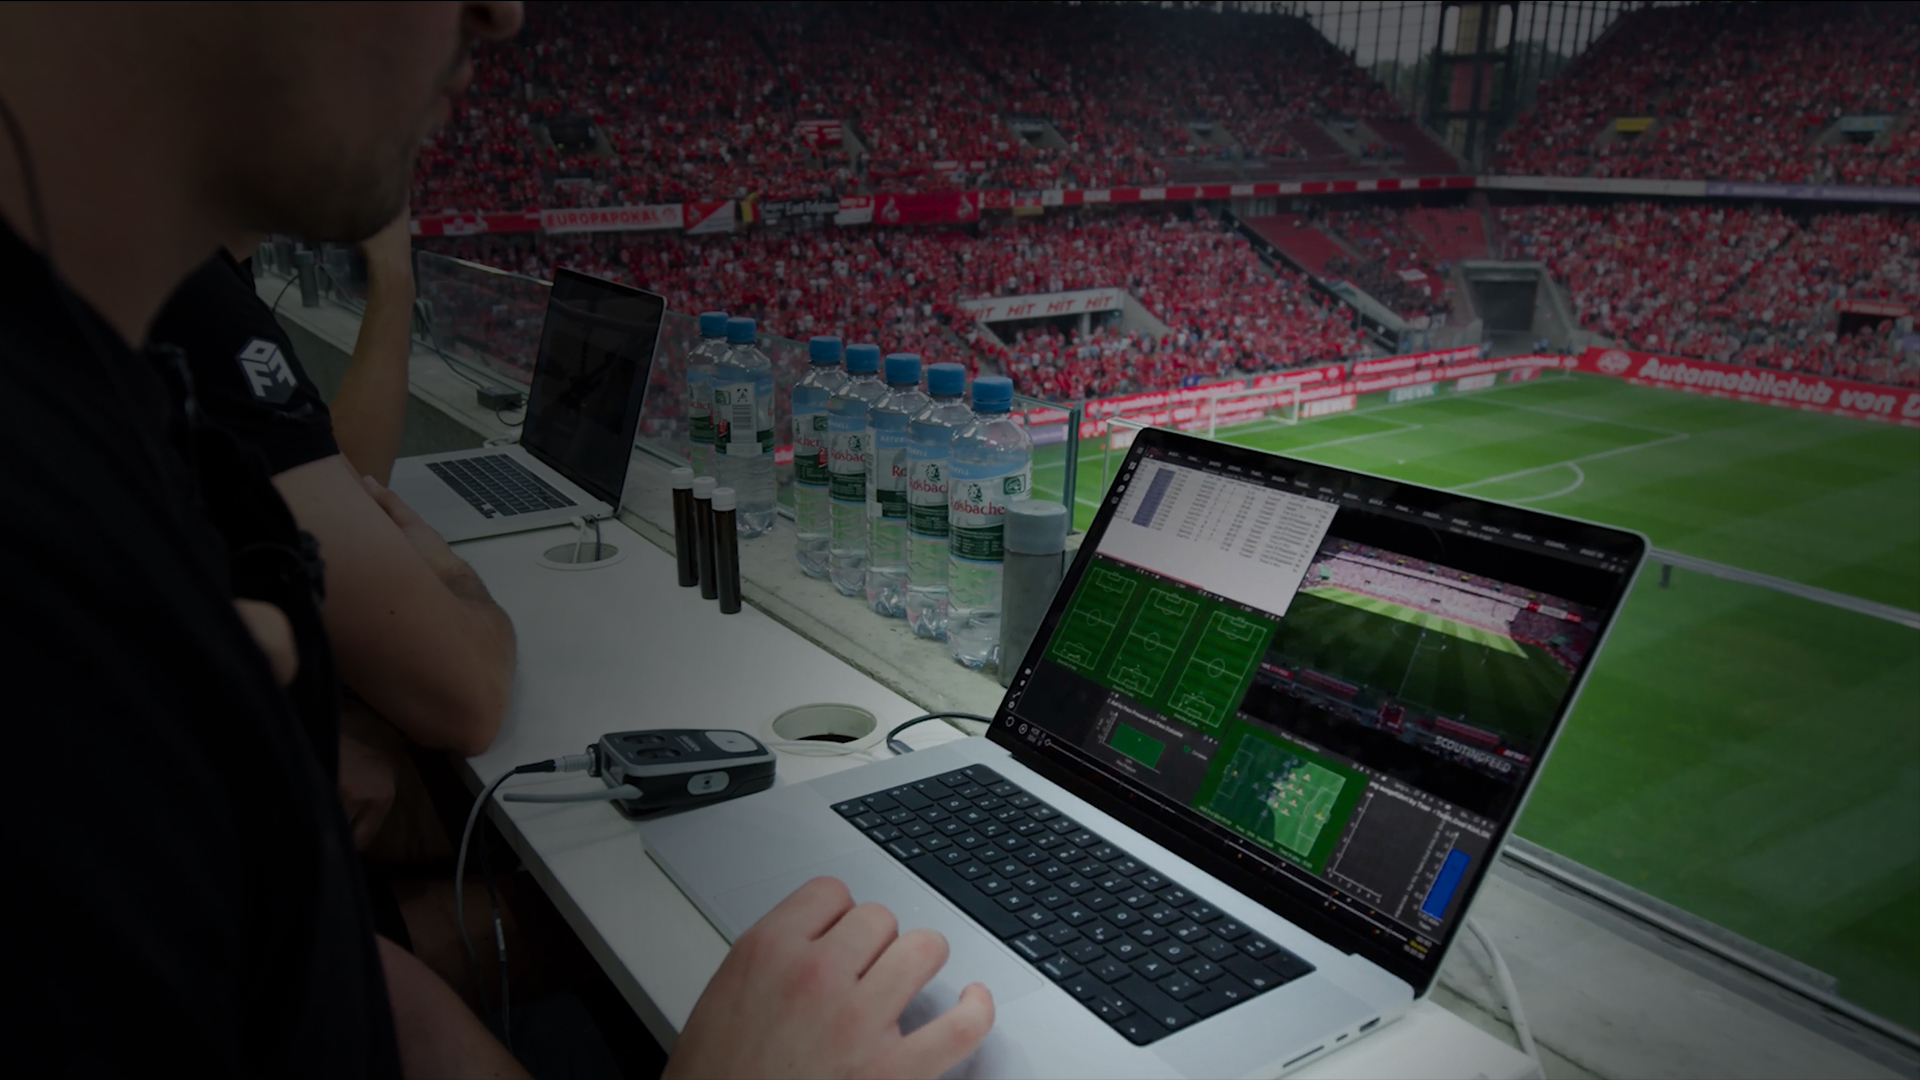 Una vista completa de la configuración de análisis en vivo de Catapult durante un partido de fútbol, destacando la integración de datos y videos en tiempo real.